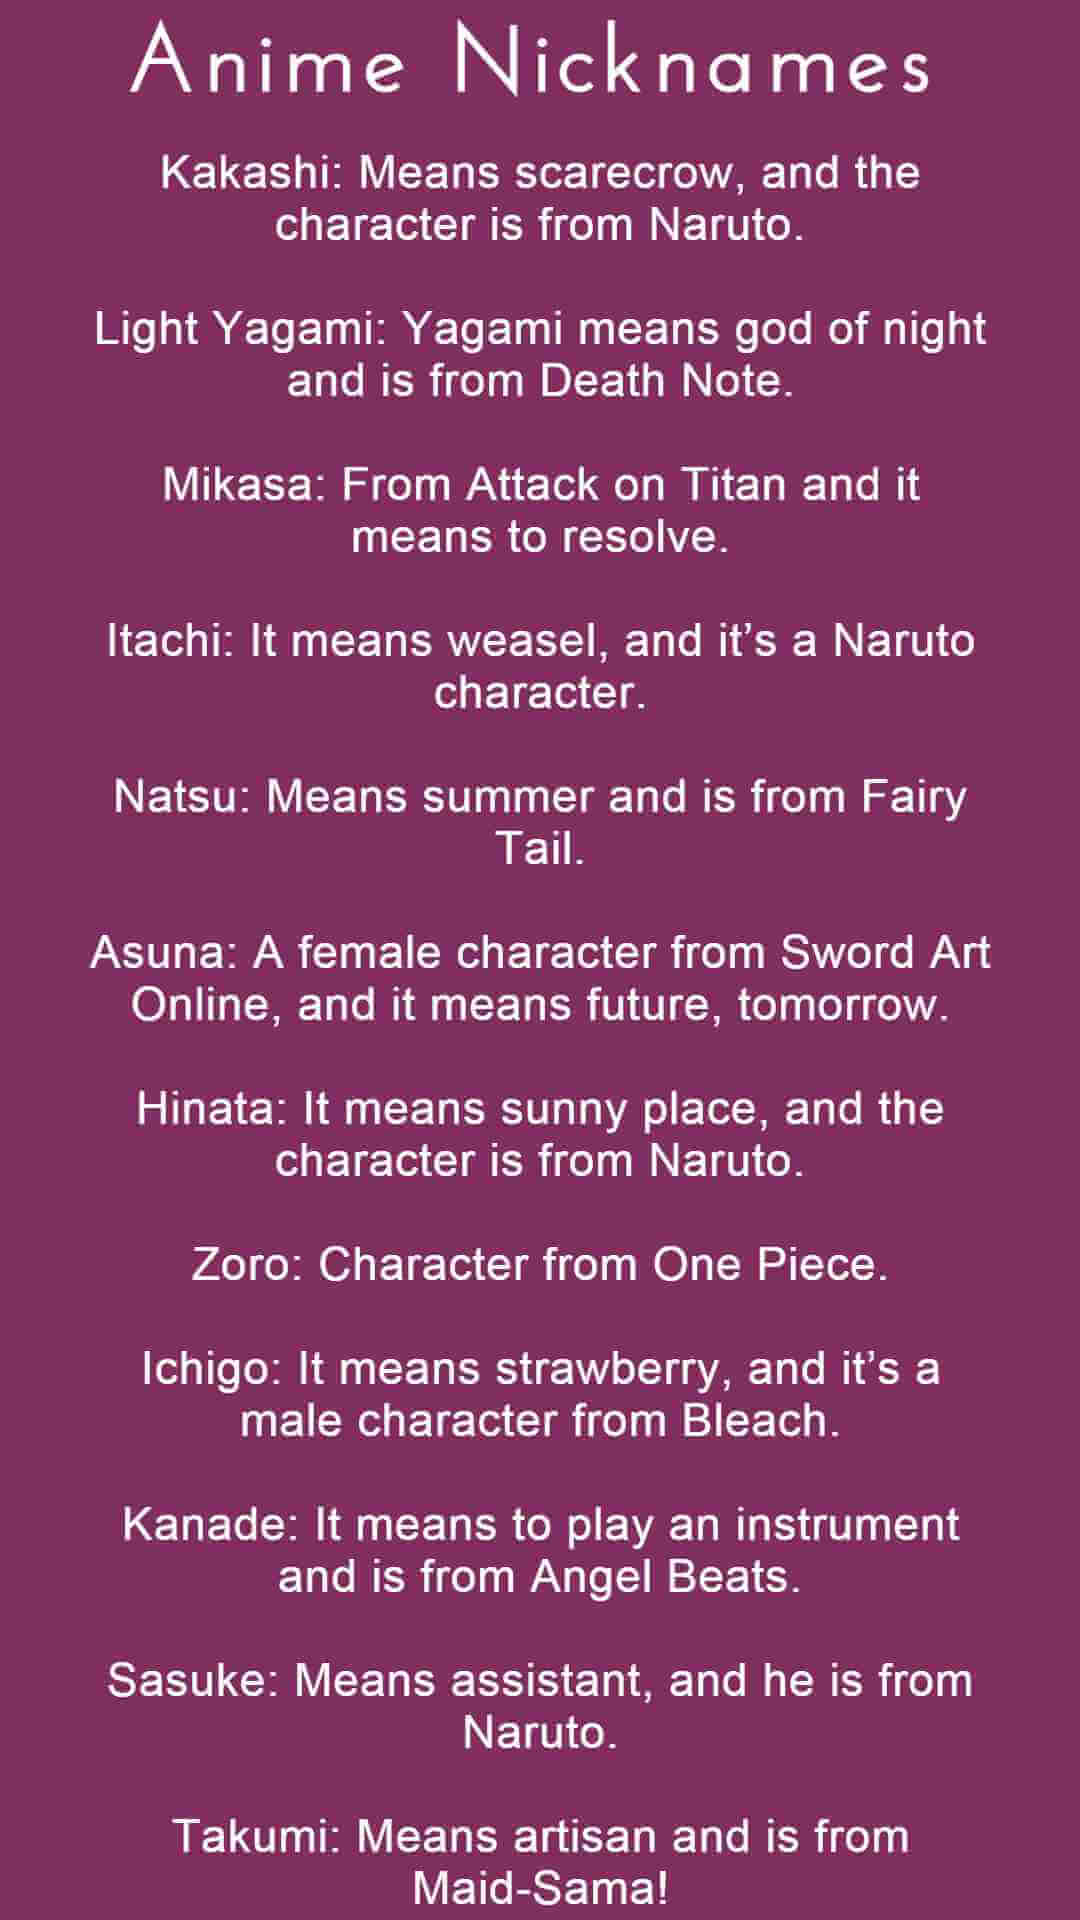 anime nicknames